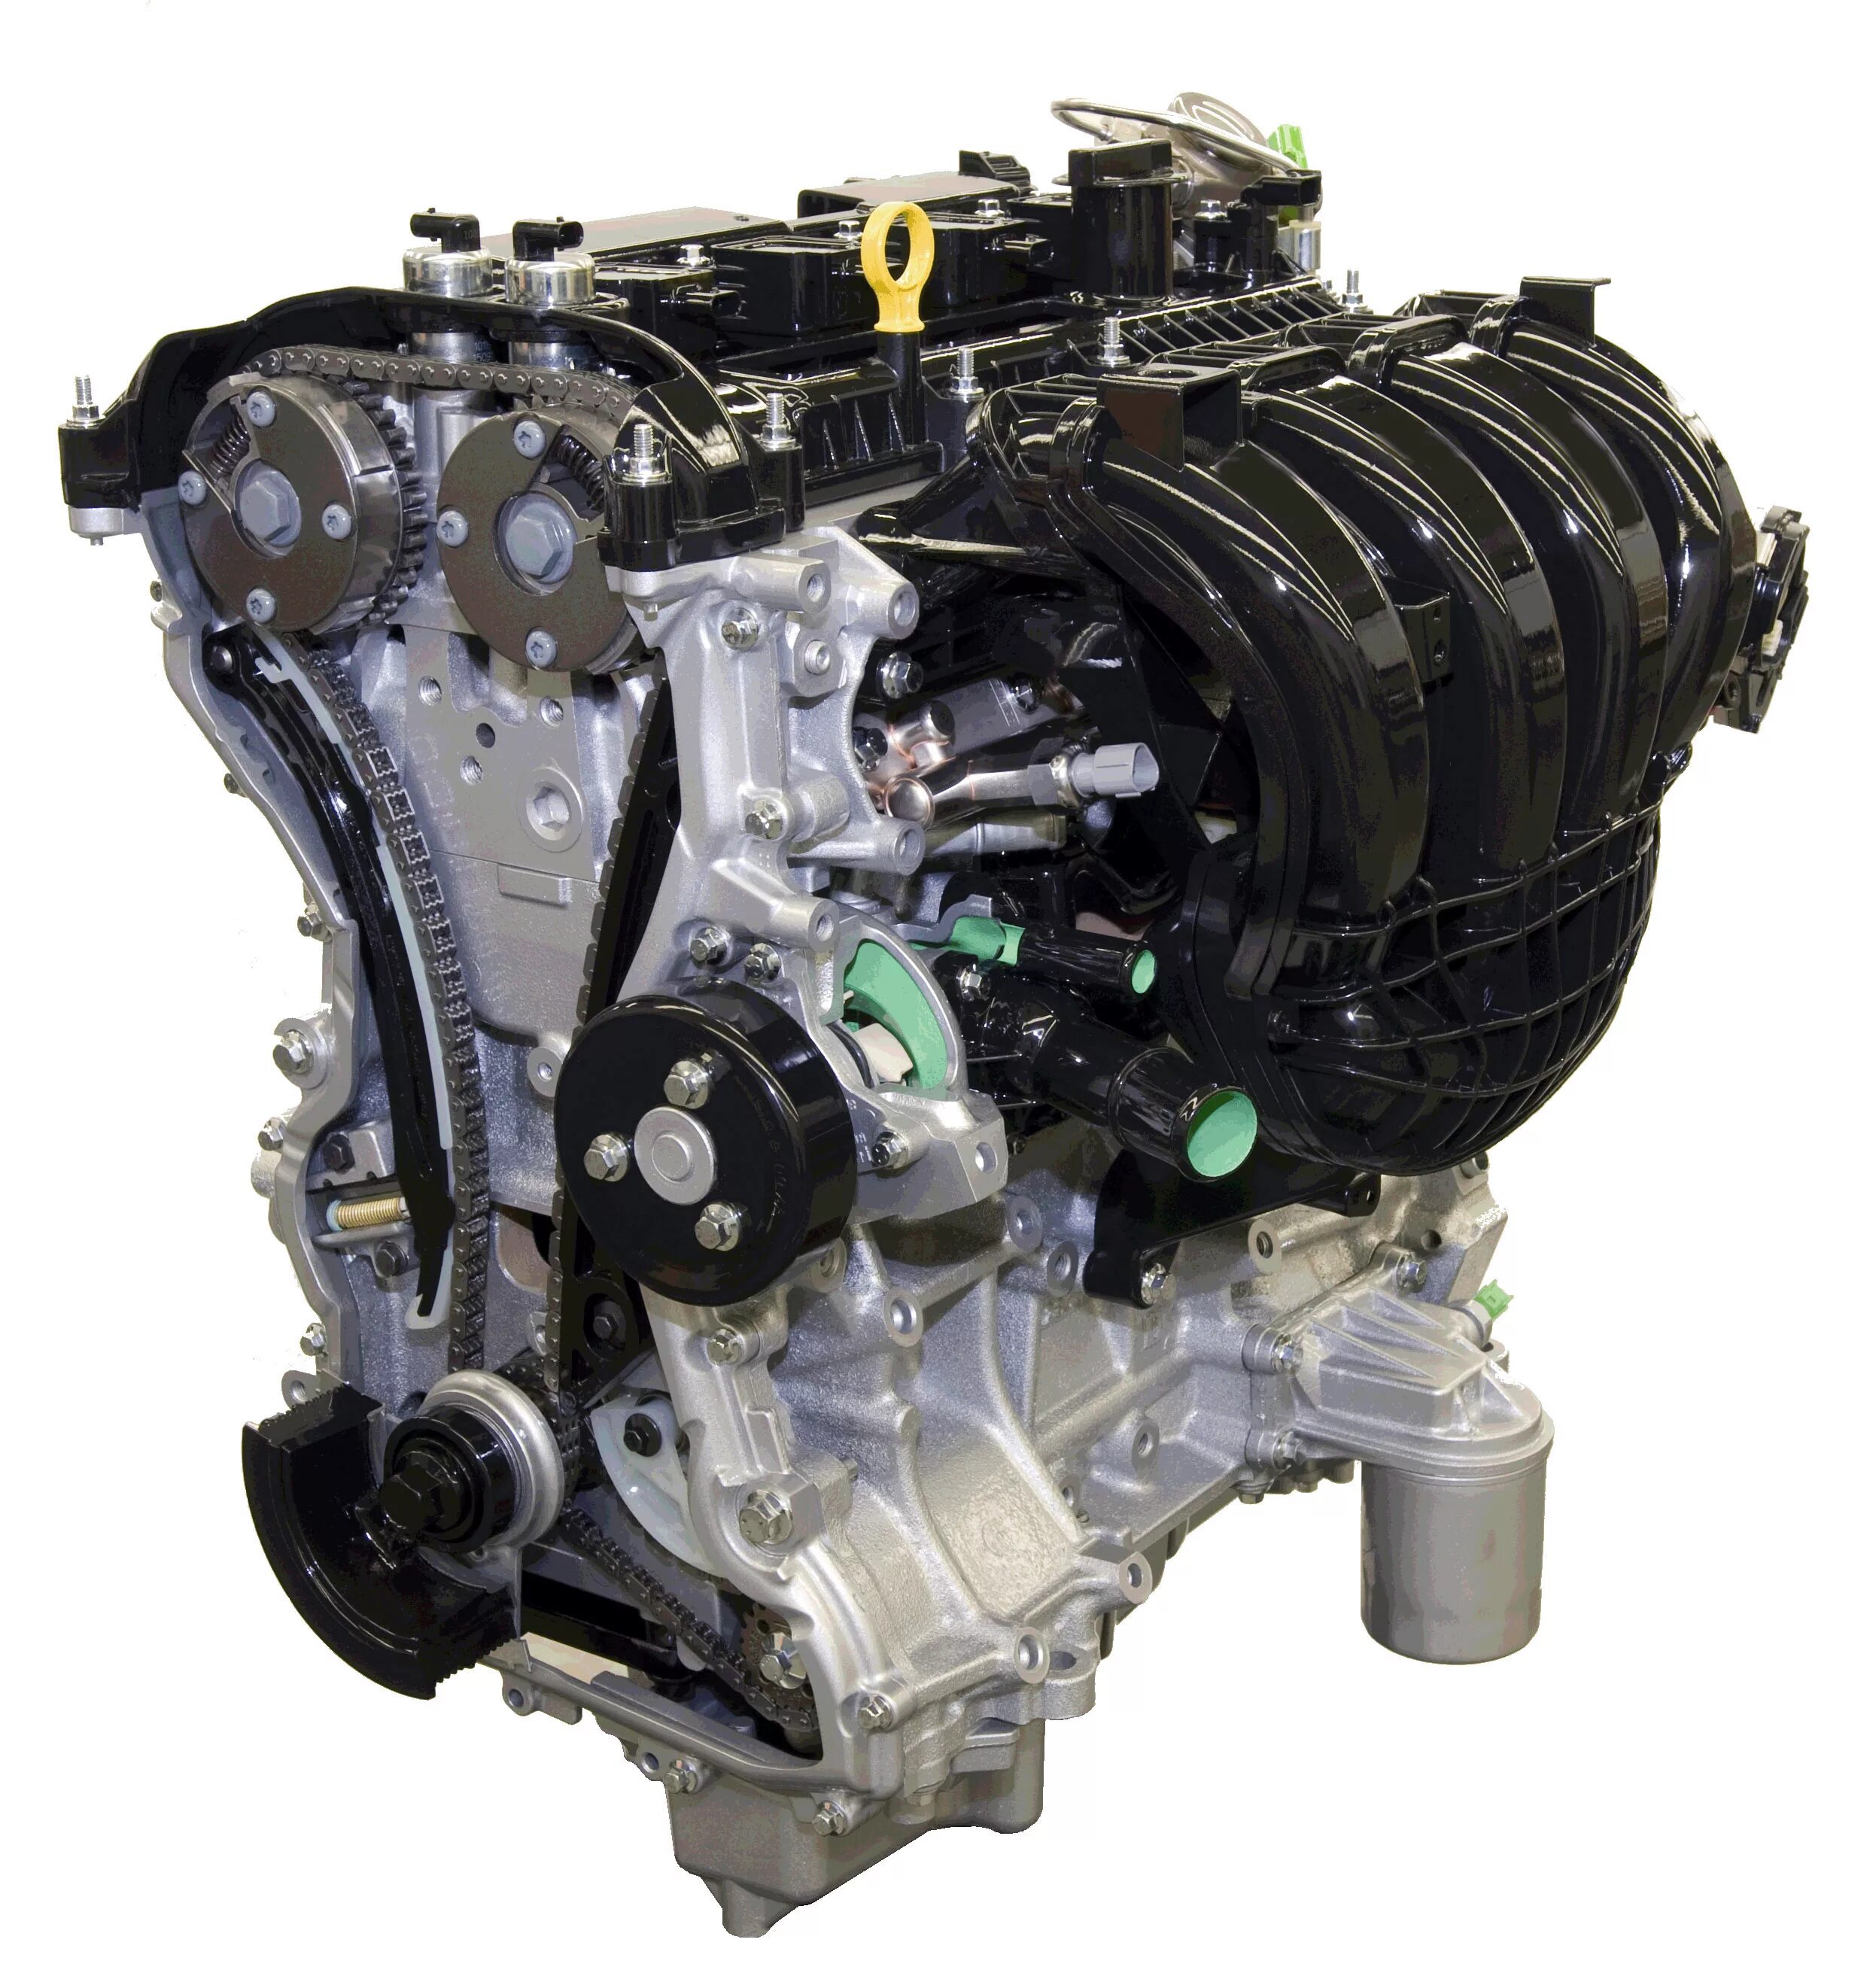 Двигатель Форд дюратек 2.0. Двигатель Форд фокус 2 2.0 145. Двигатель Форд фокус 2 2 литра. Двигатель Форд фокус 2 дюратек.